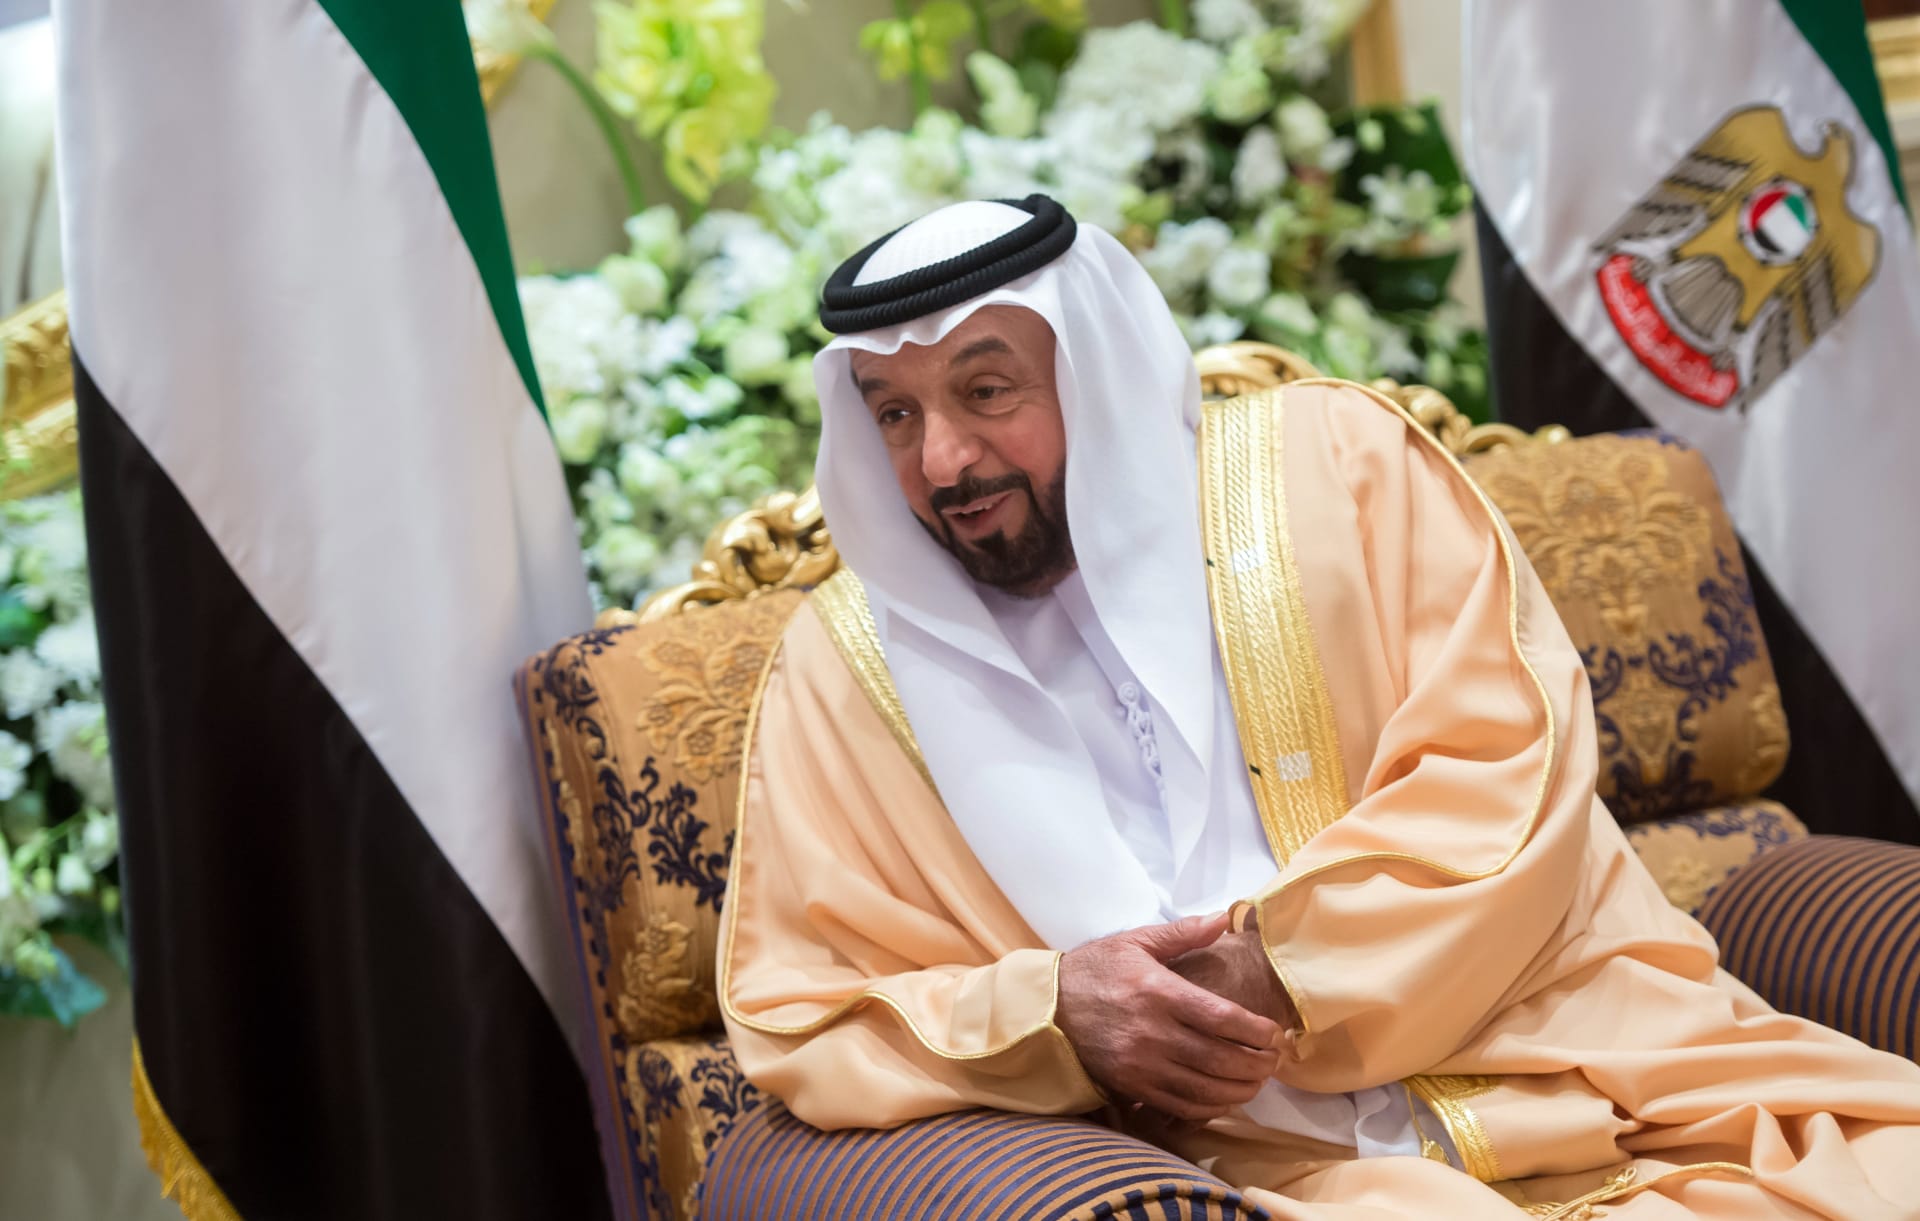 صورة حقيقة وفاة رئيس الامارات الشيخ خليفة بن زايد بالسرطان